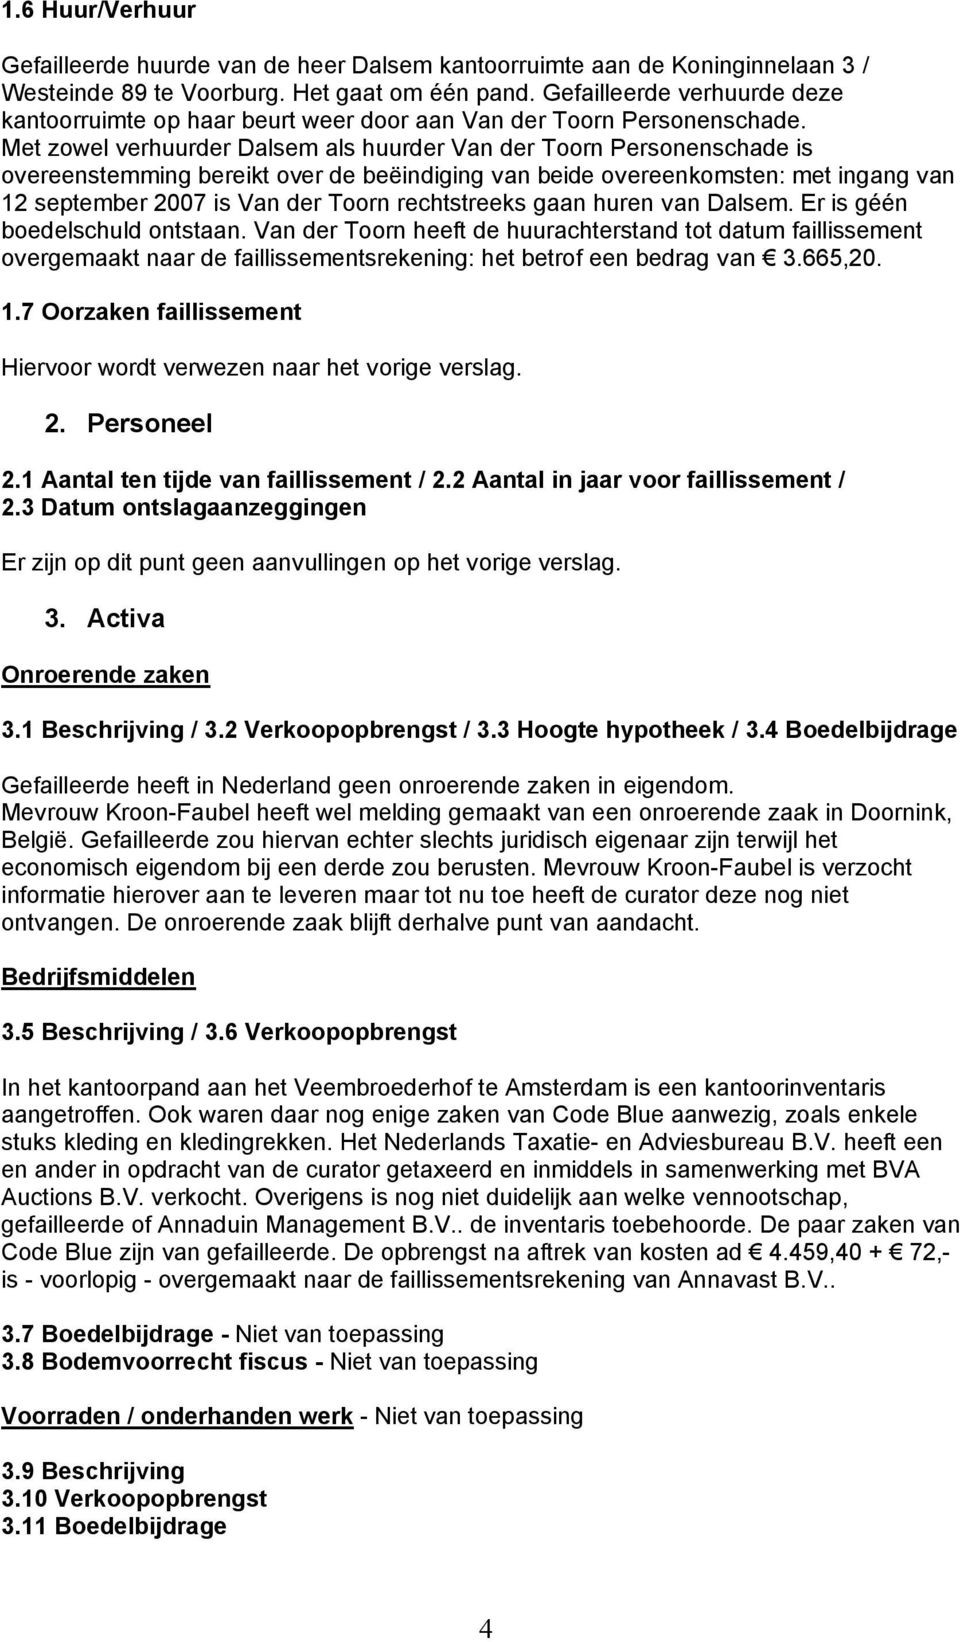 Met zowel verhuurder Dalsem als huurder Van der Toorn Personenschade is overeenstemming bereikt over de beëindiging van beide overeenkomsten: met ingang van 12 september 2007 is Van der Toorn